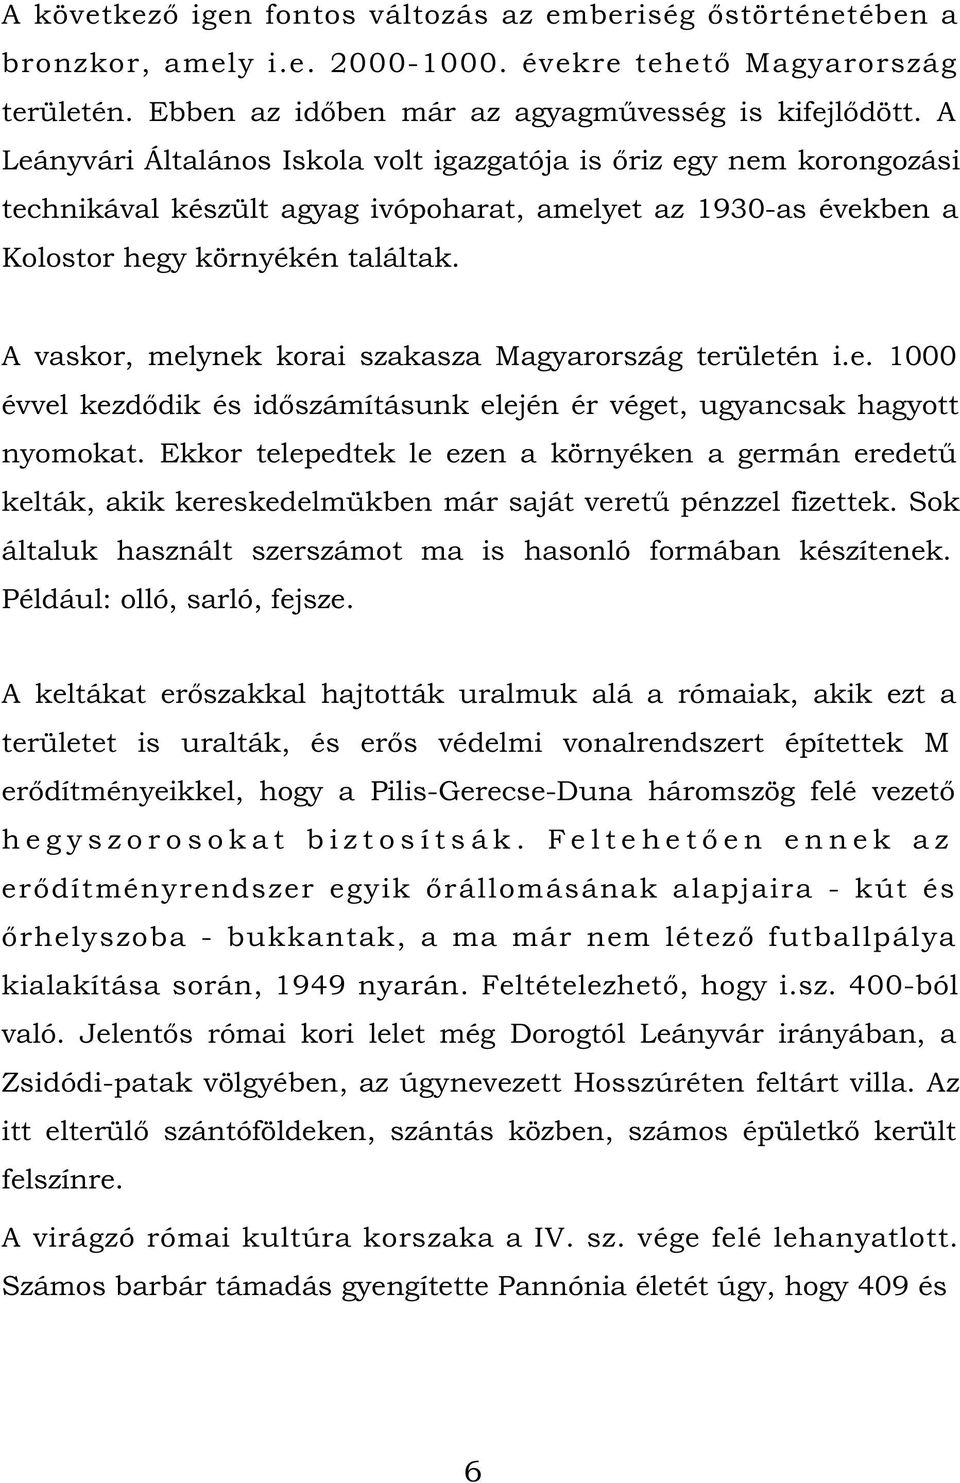 A vaskor, melynek korai szakasza Magyarország területén i.e. 1000 évvel kezdődik és időszámításunk elején ér véget, ugyancsak hagyott nyomokat.